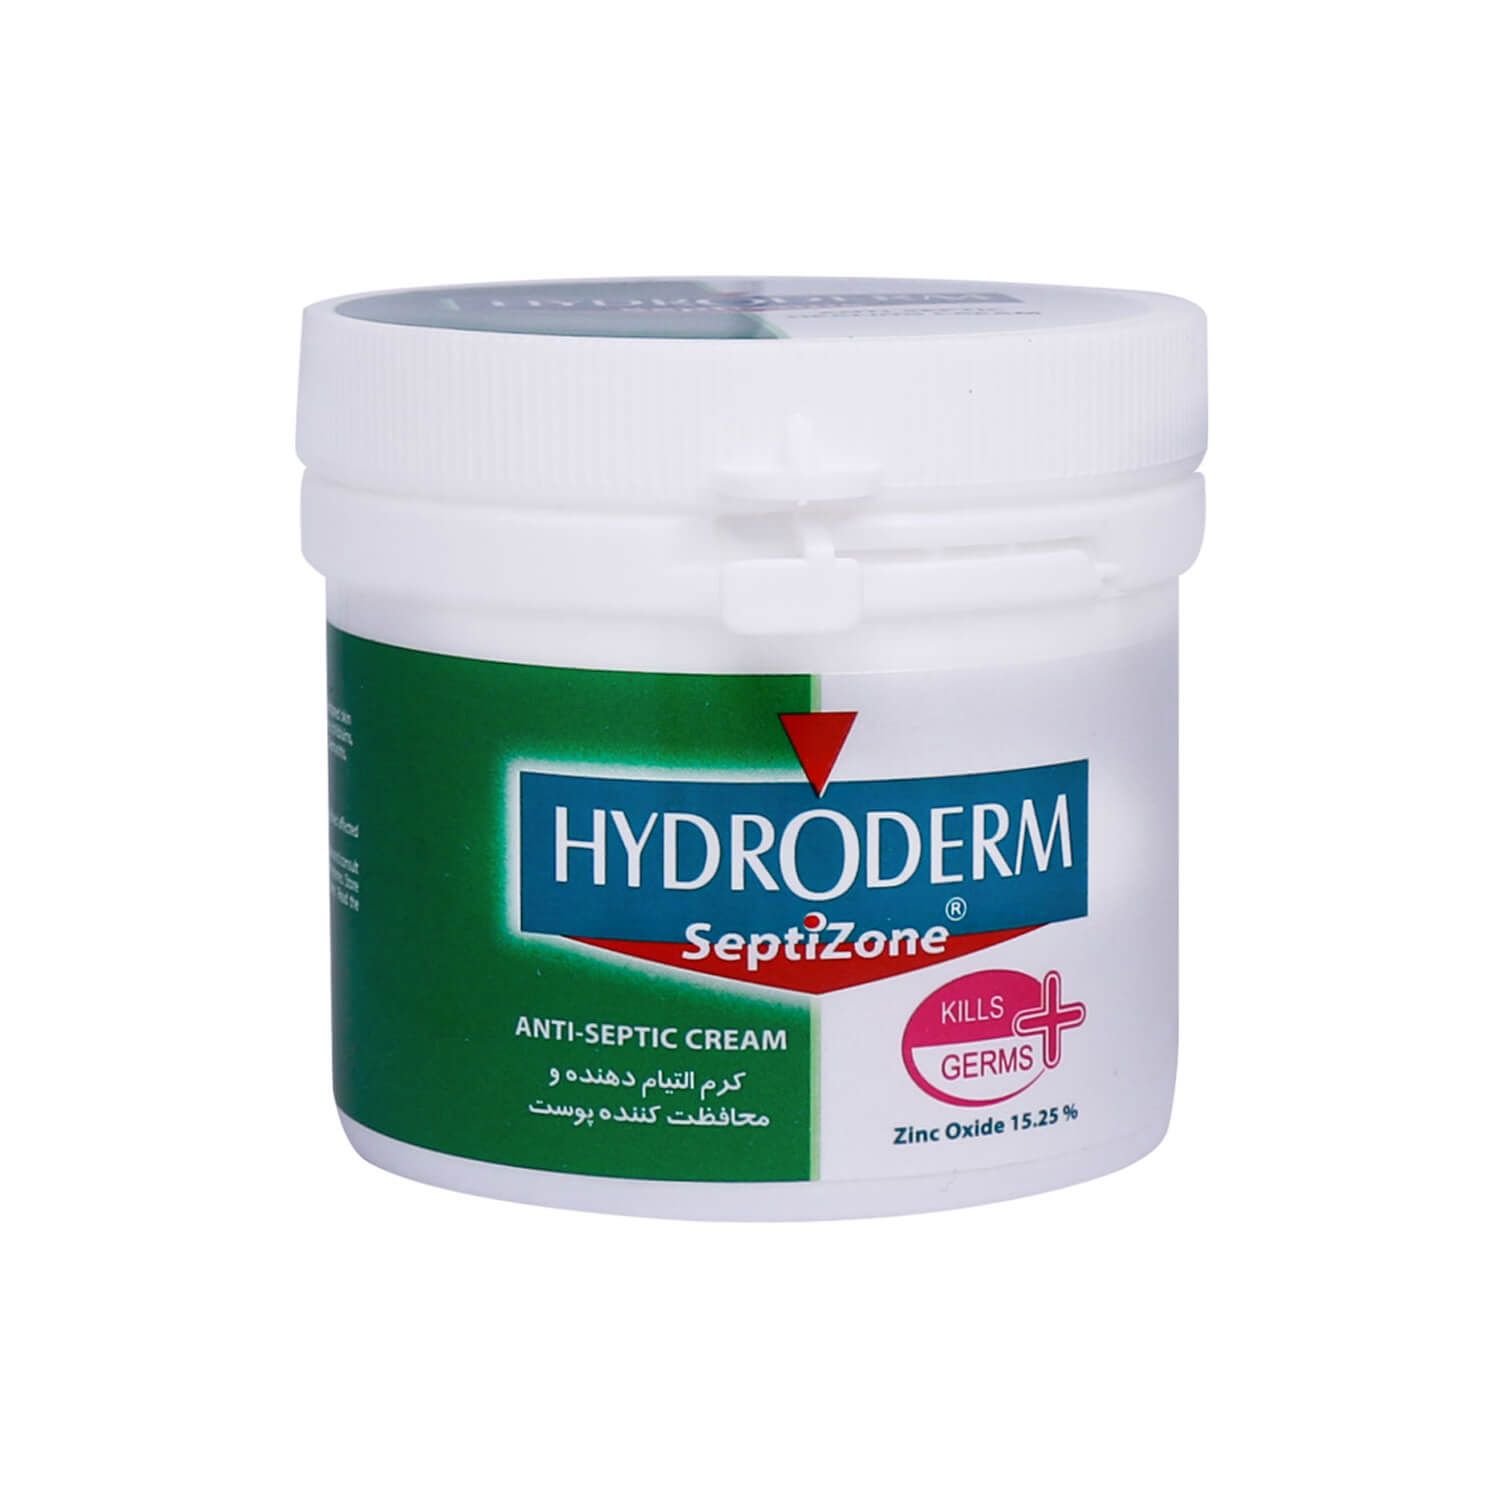 کرم التیام دهنده و محافظت کننده پوست سپتی زون هیدرودرم حجم 150 میلی لیتر